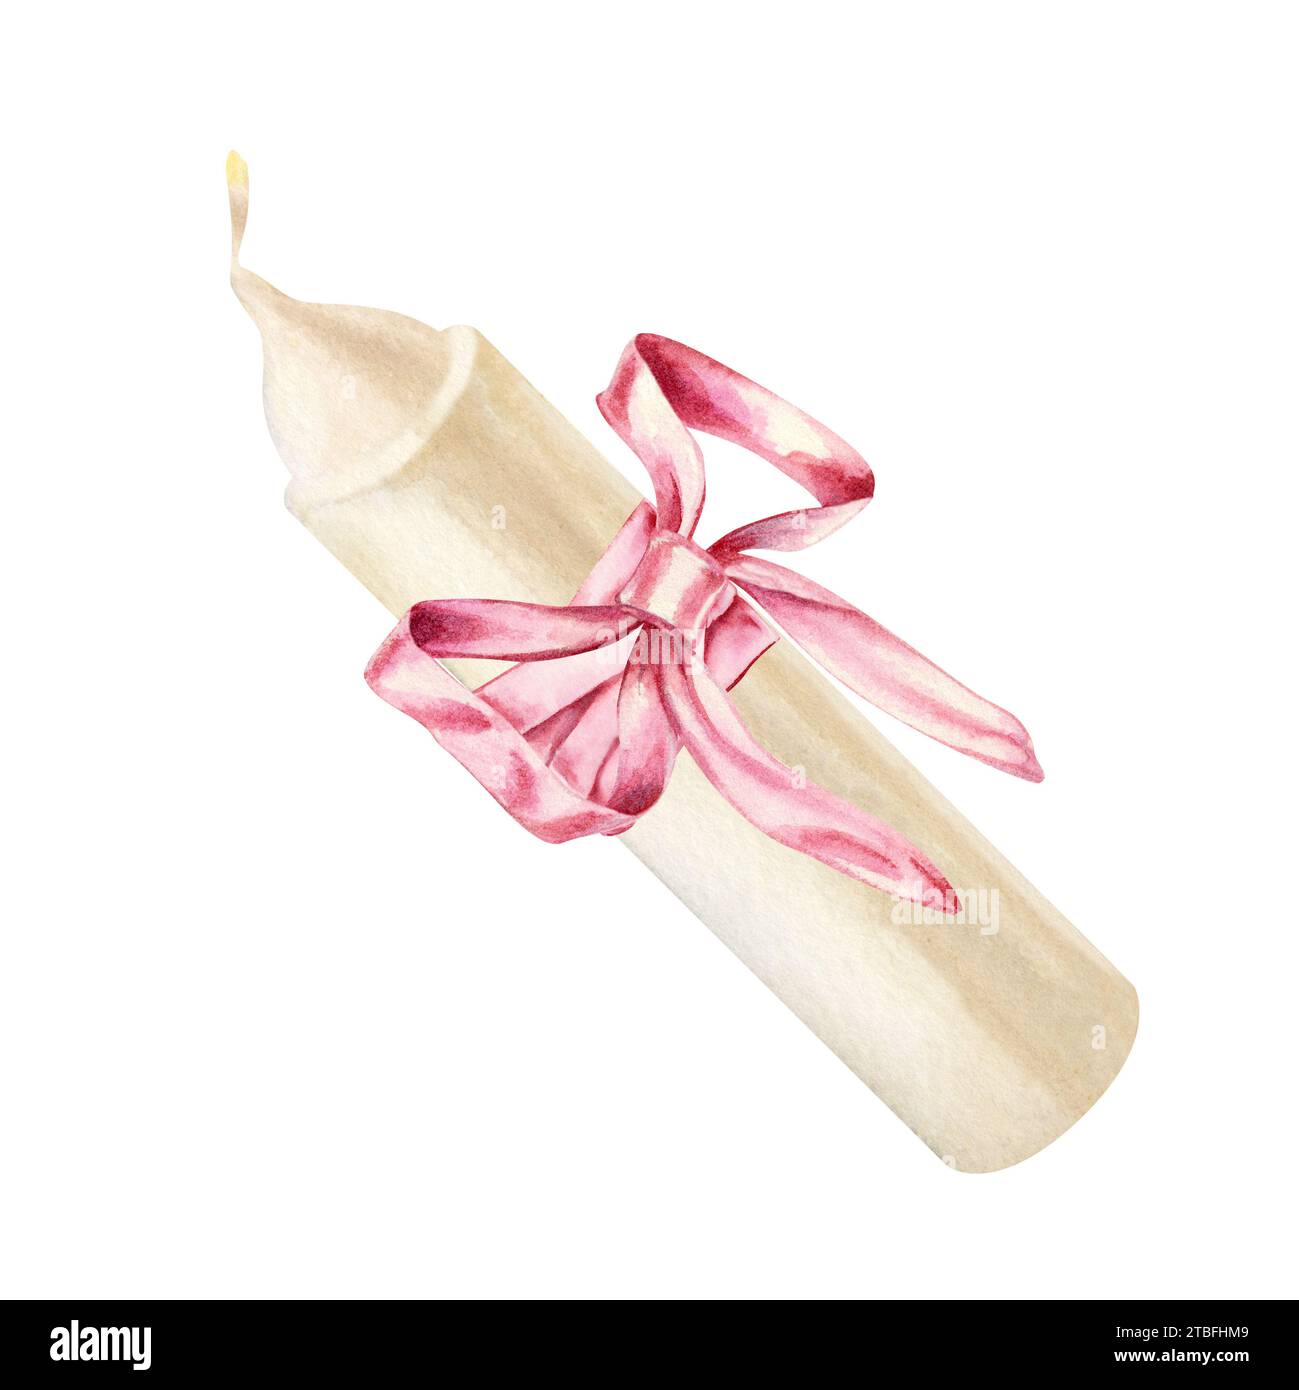 Candela bianca ad acquerello con fiocco rosa per illustrazioni di Natale, candele, matrimonio, compleanno, Pasqua, magia, giornata commemorativa, spa e relax Foto Stock